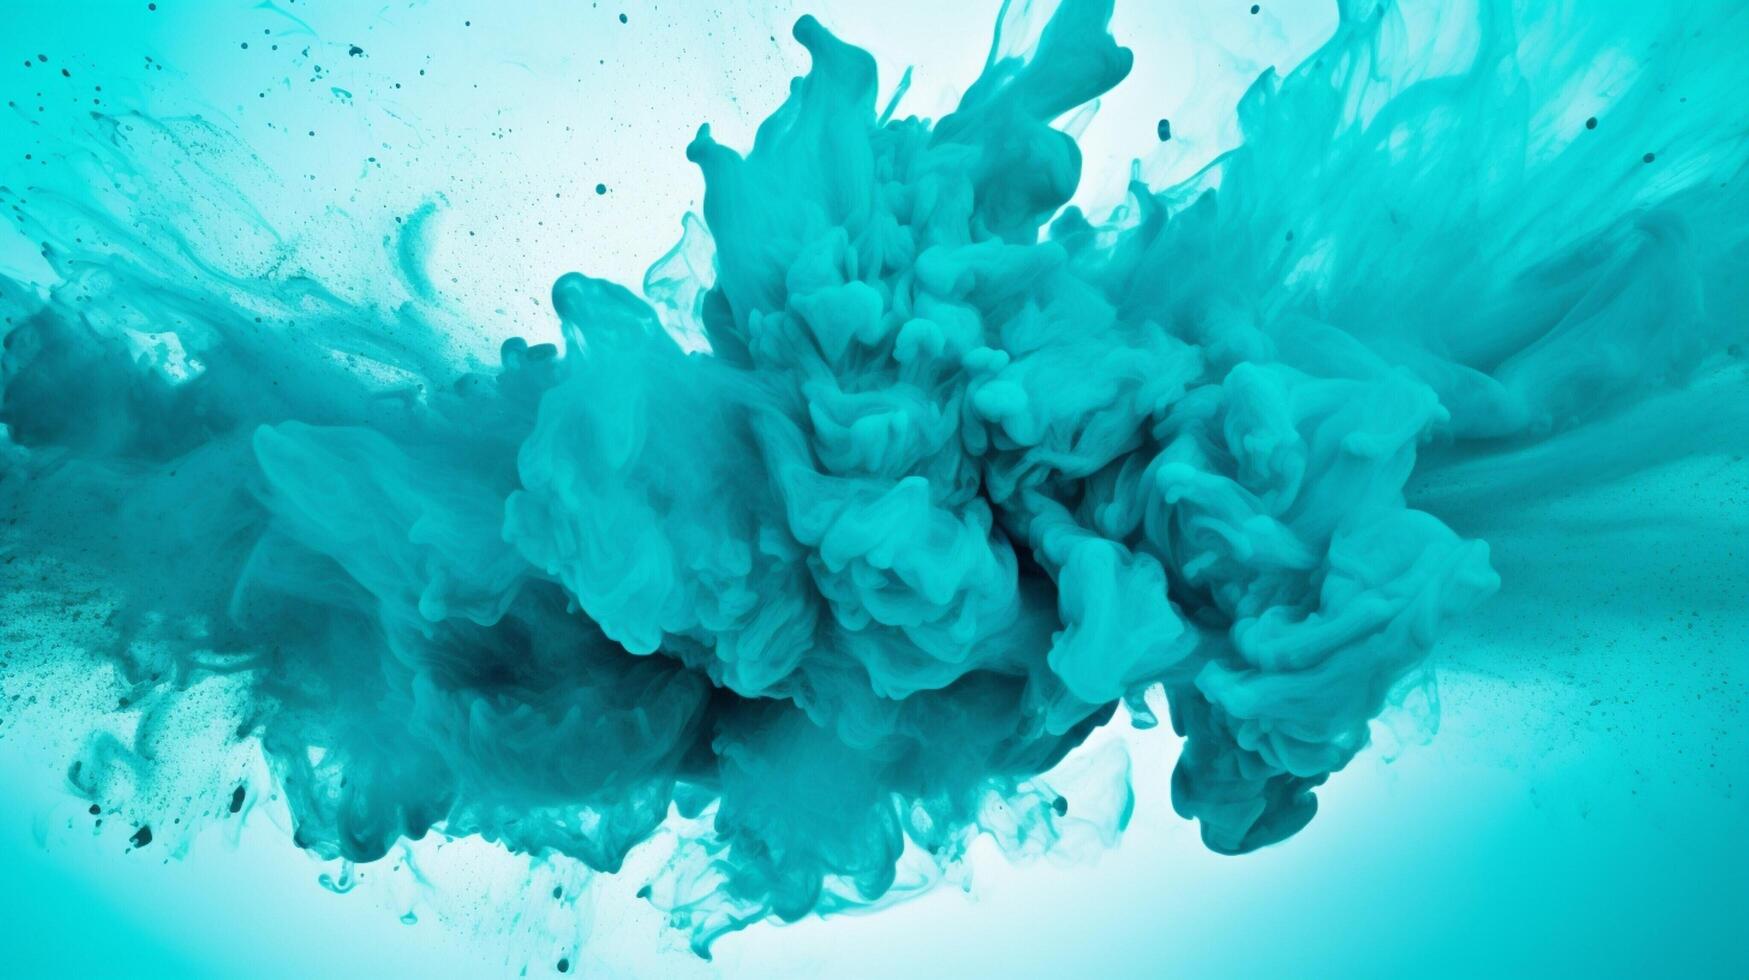 AI generated Turquoise color powder splash background photo